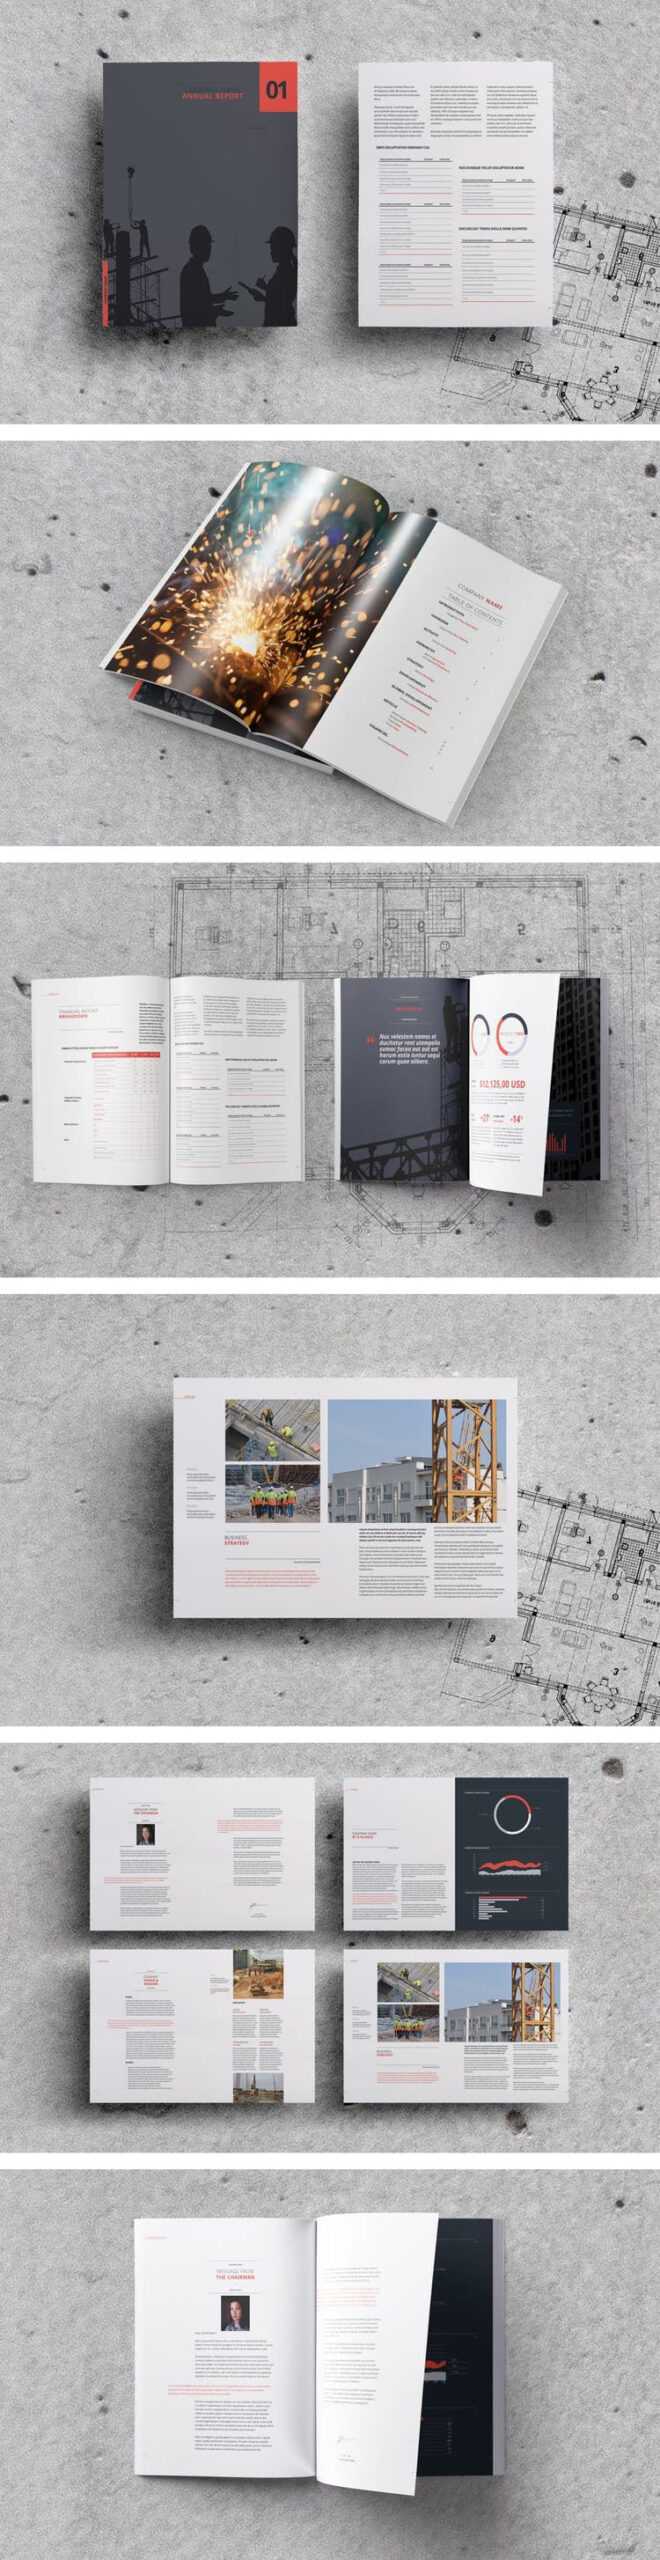 60 Best Annual Report Design Templates Pertaining To Free Annual Report Template Indesign